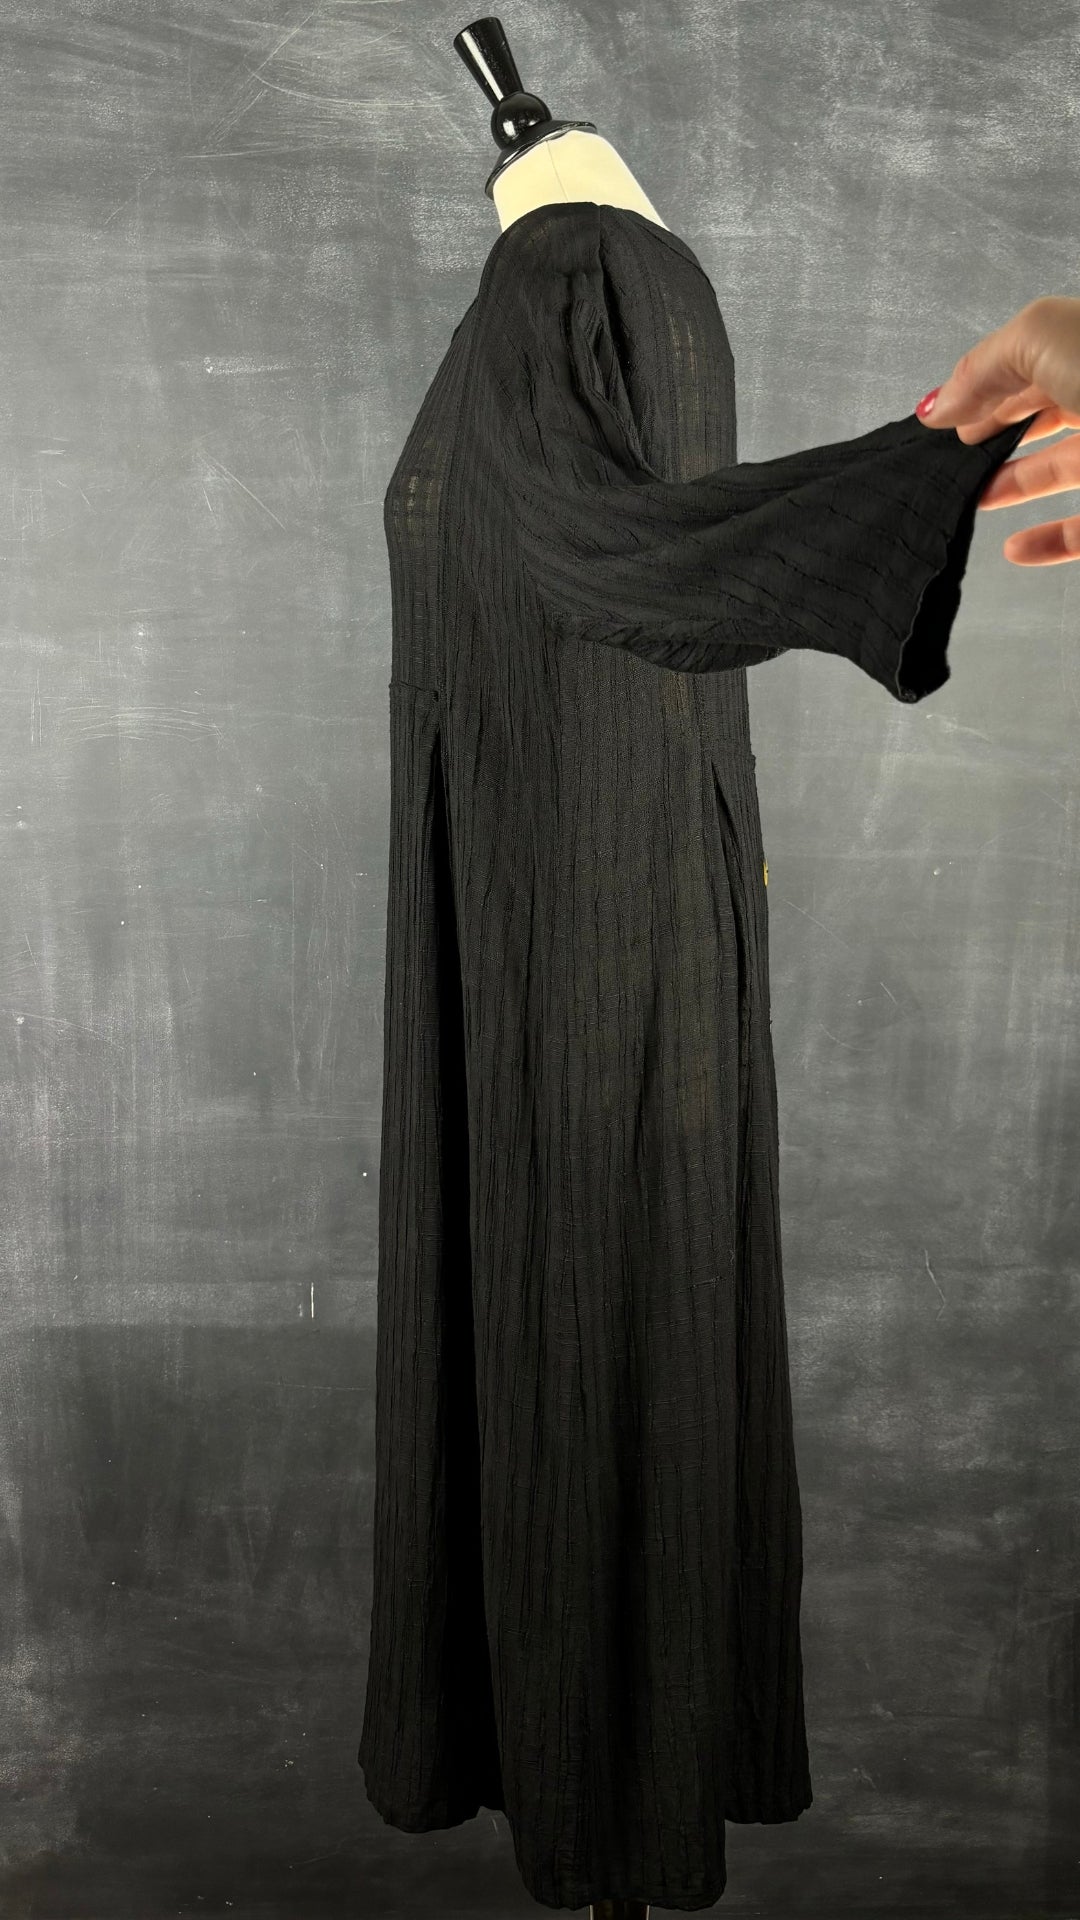 Robe longue noire texturée en mélange de lin Kaliyana, taille m/l. Vue de côté, manche relevée.